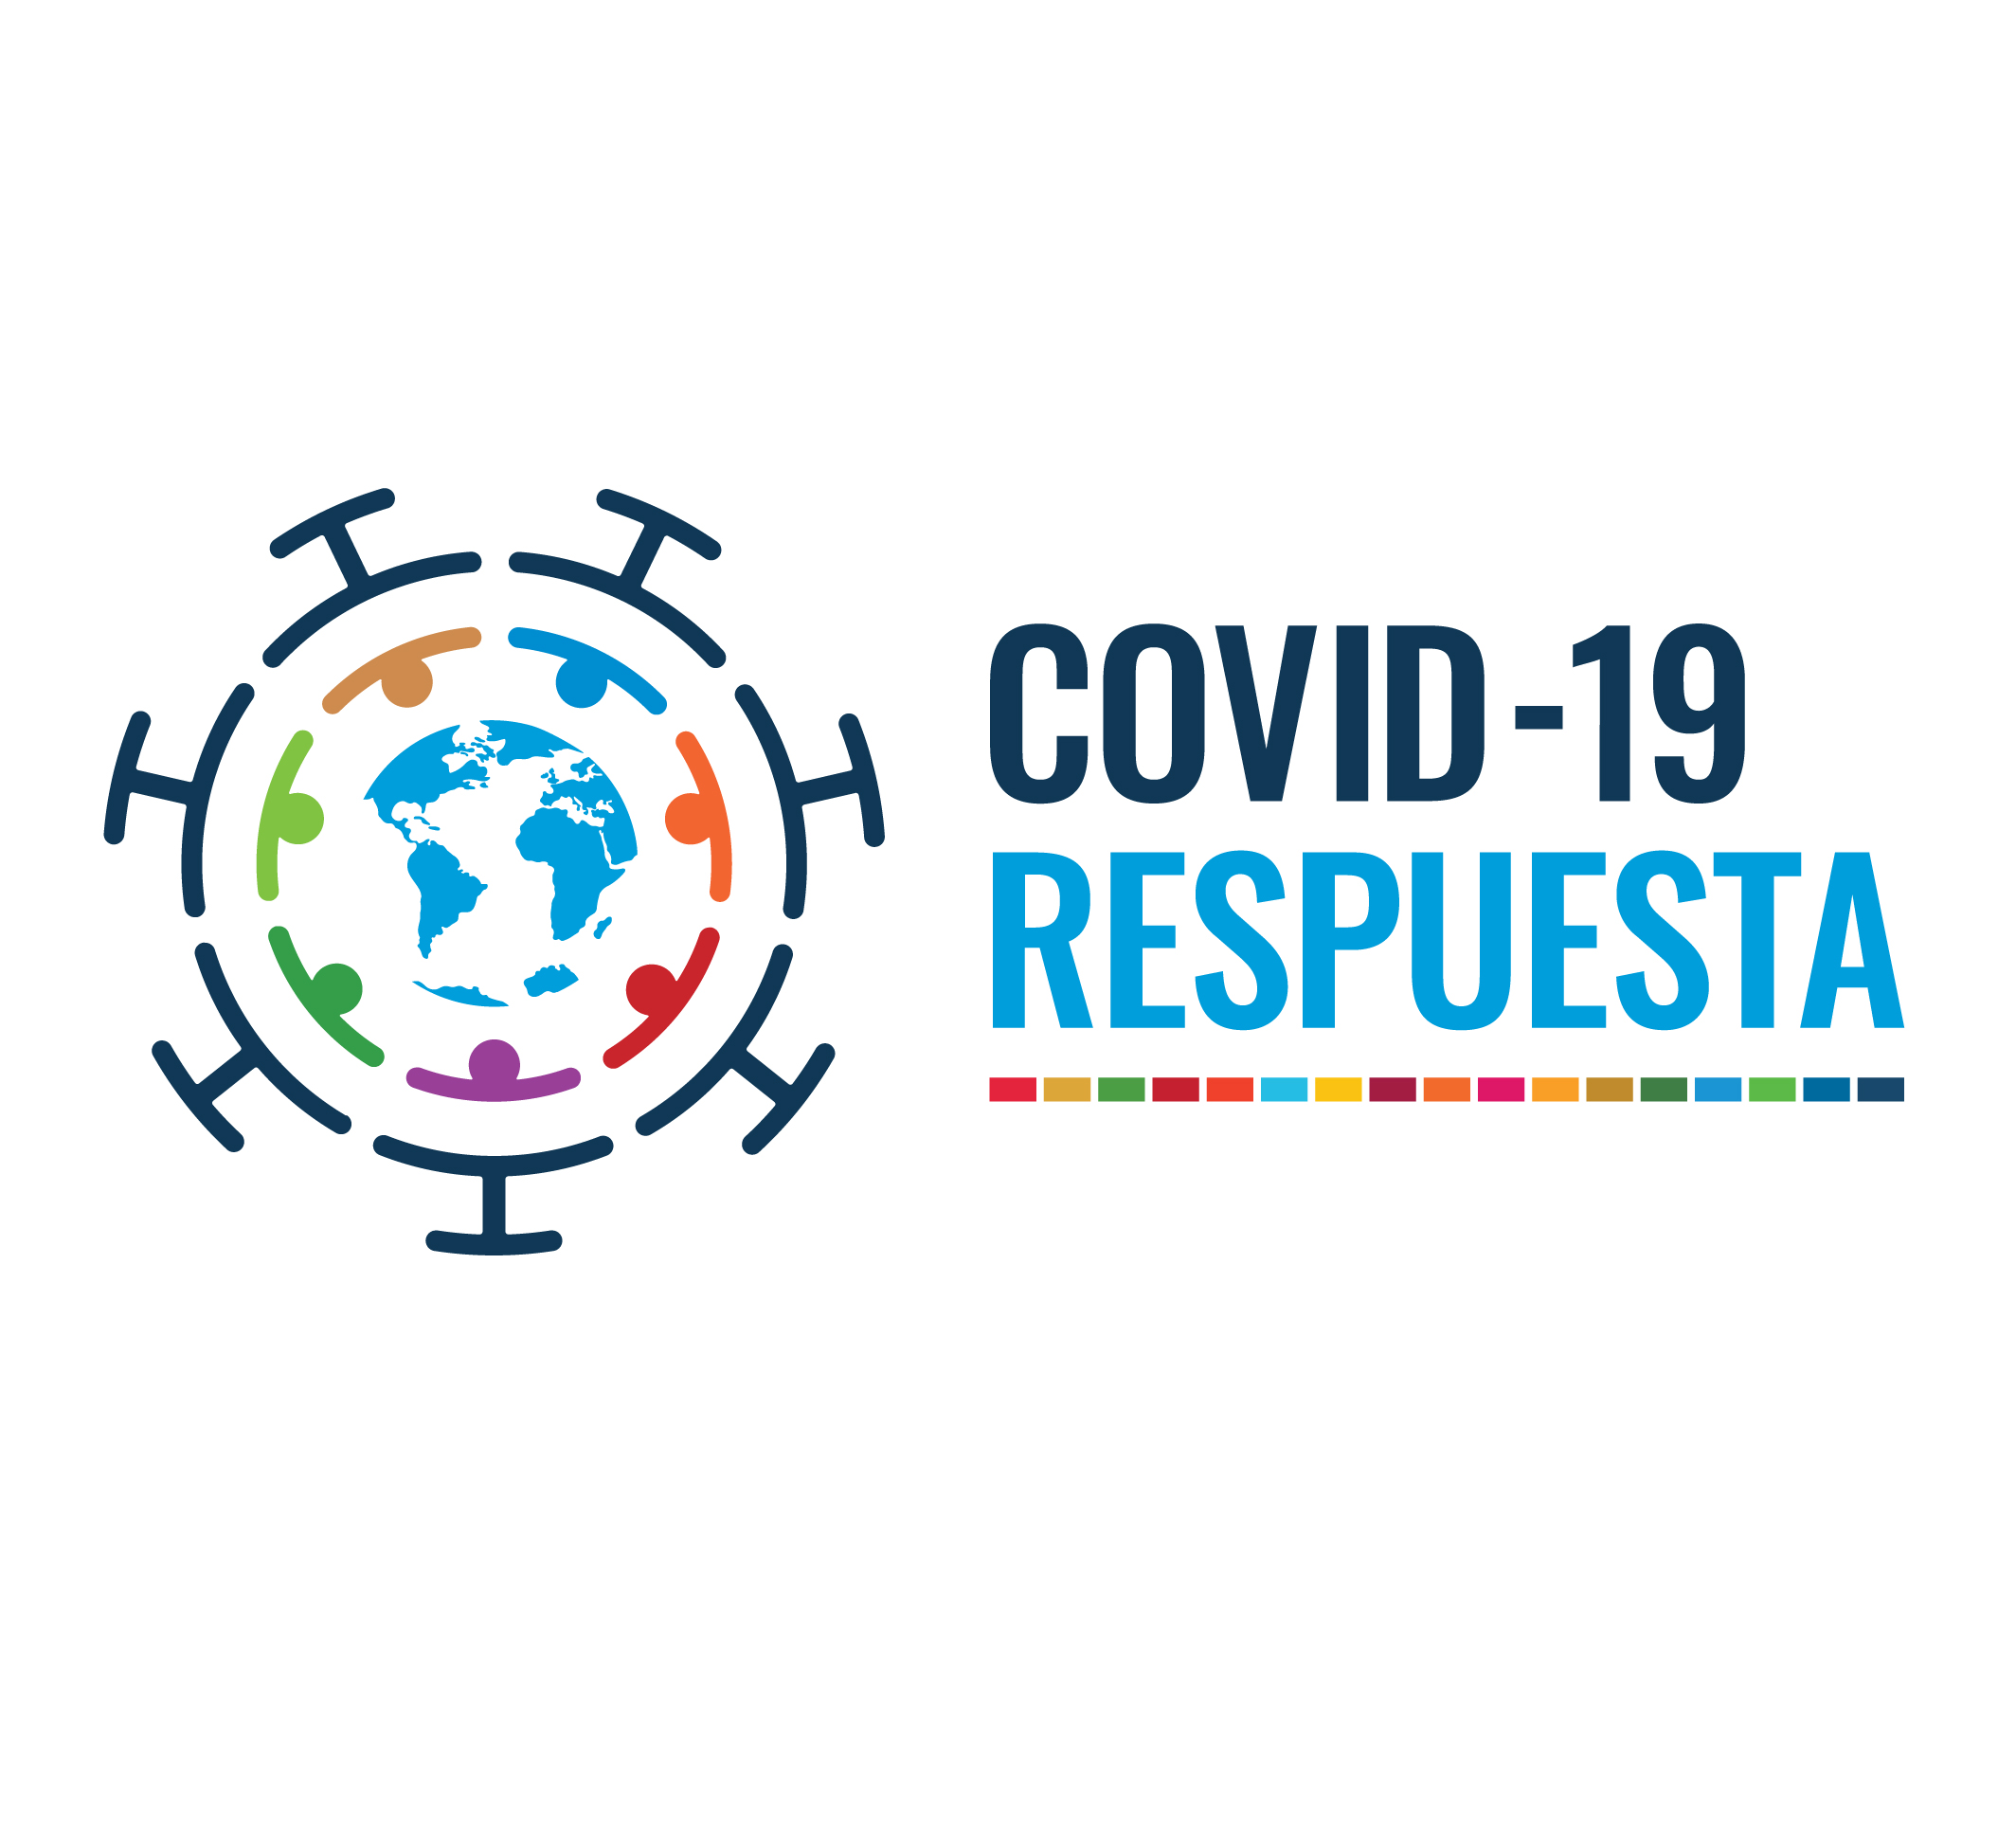 COVID-19 respuesta